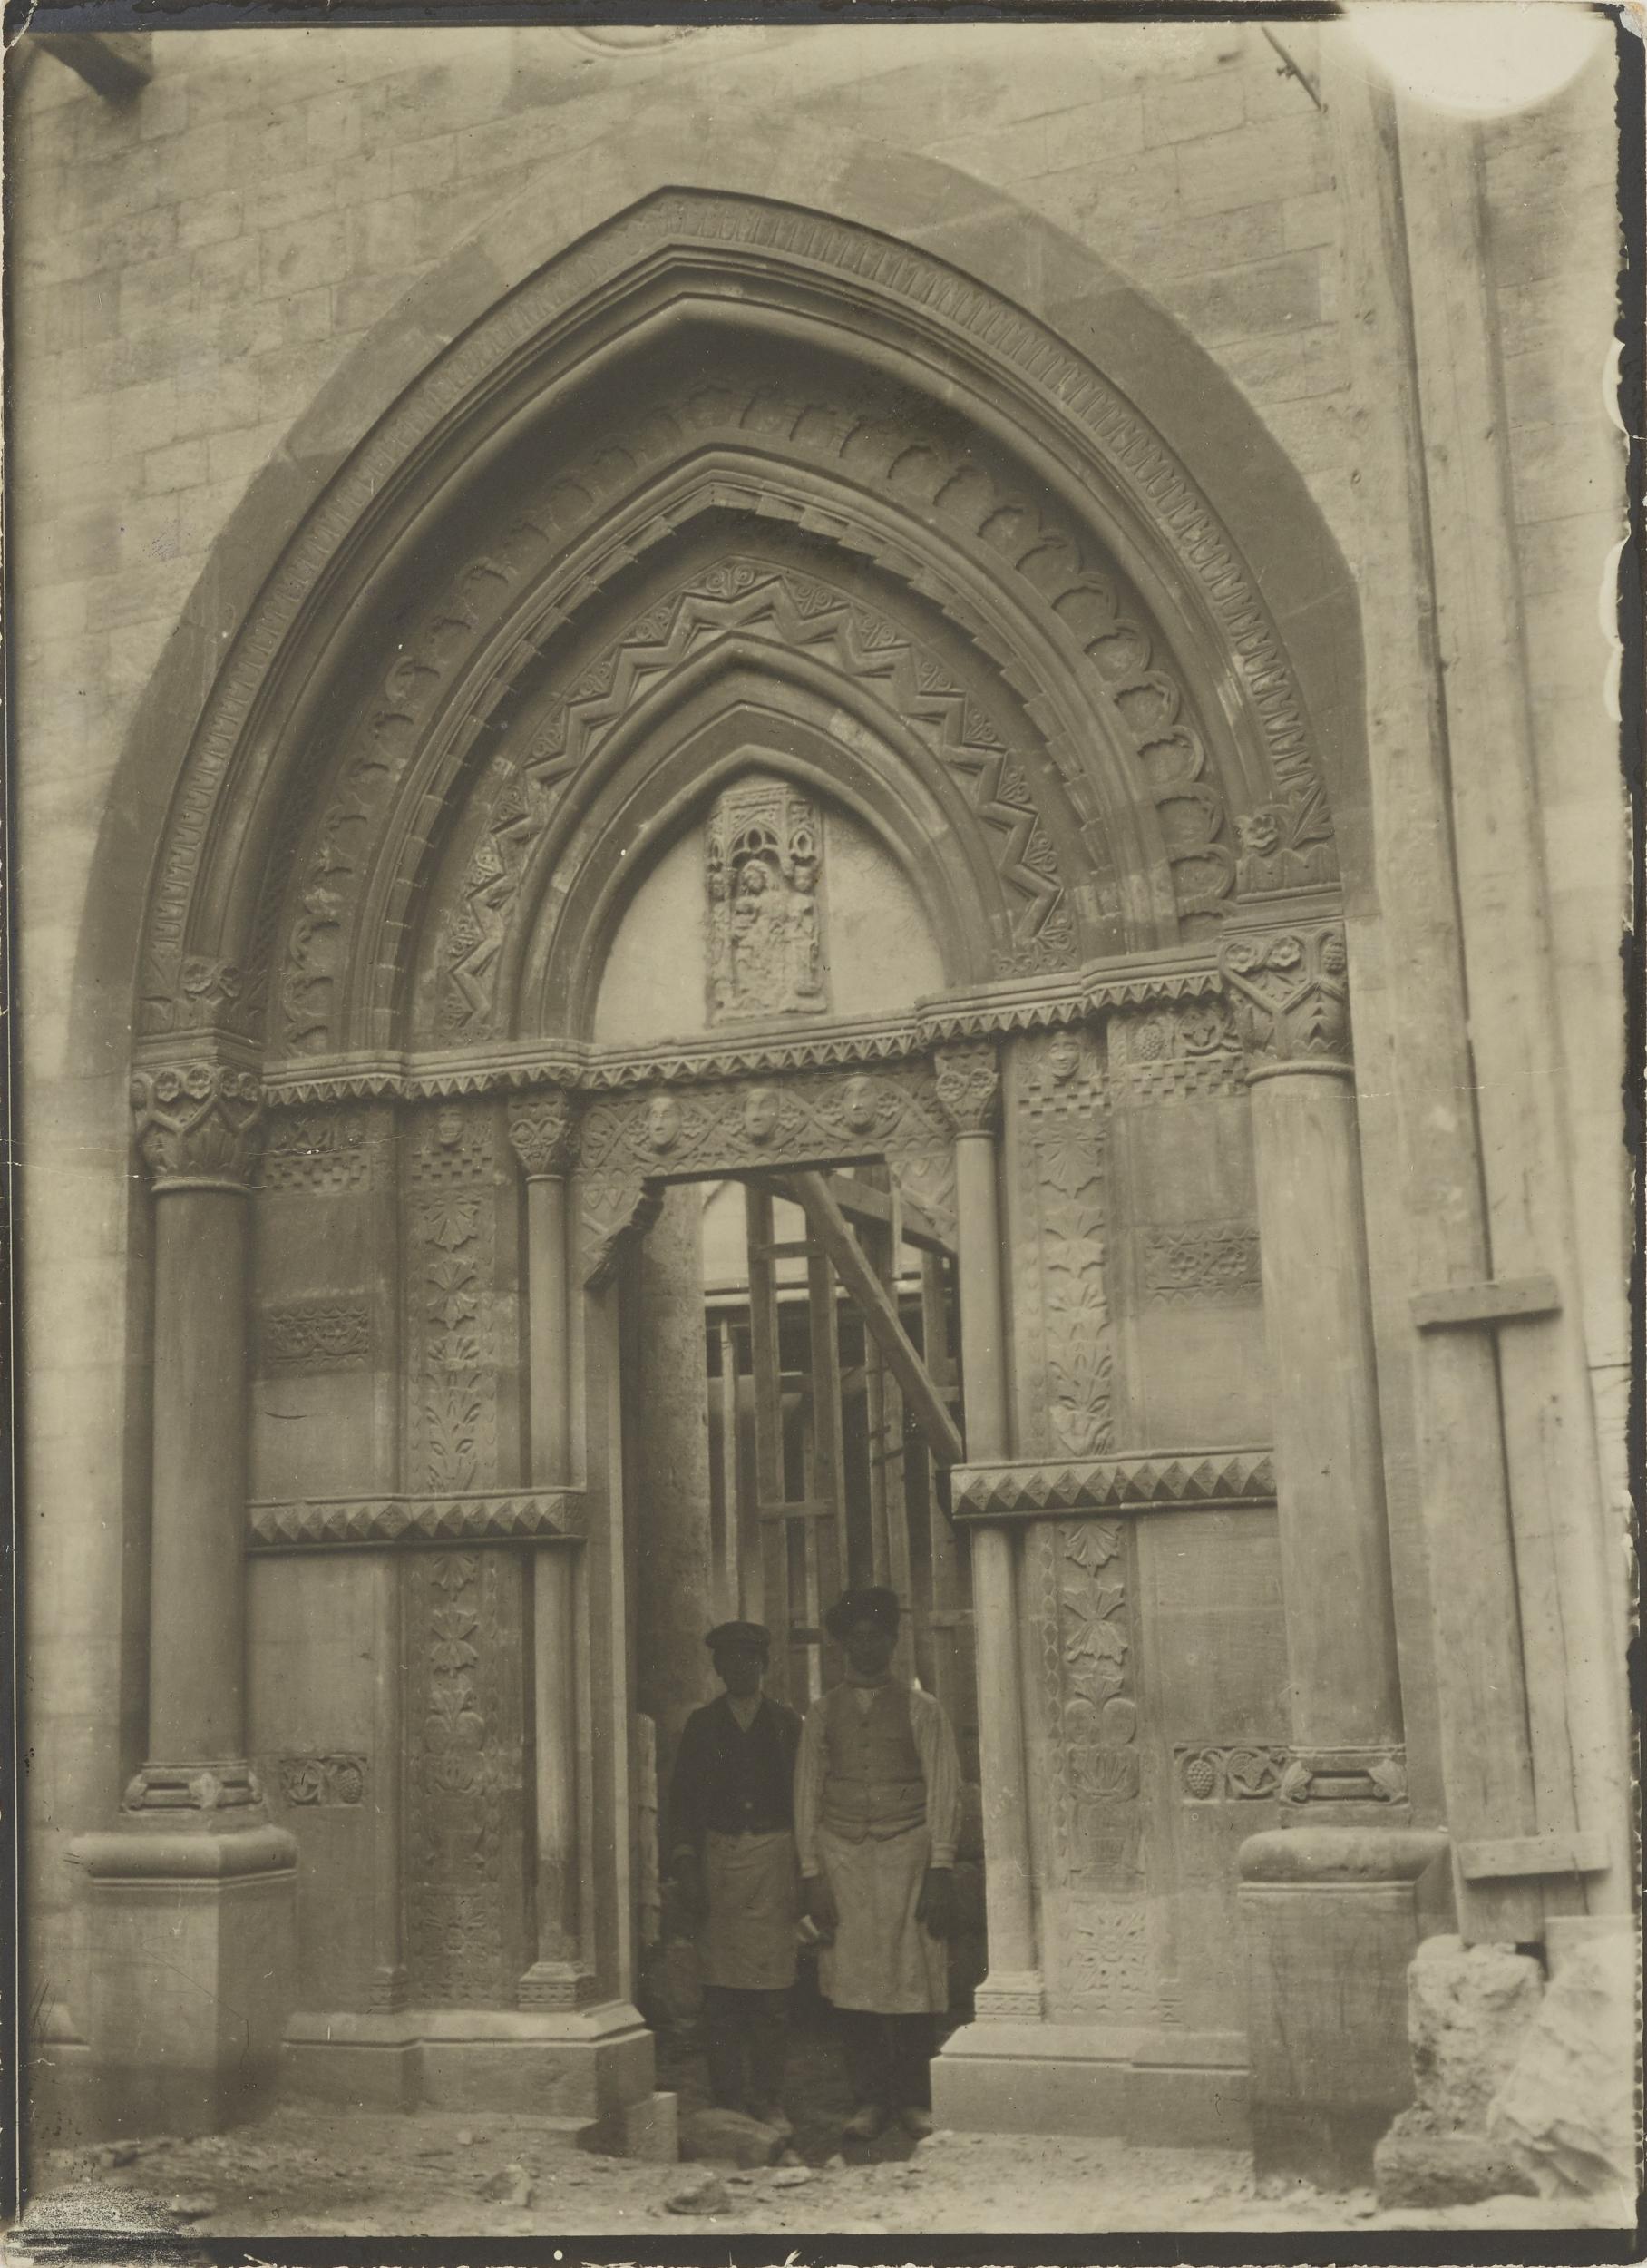 Fotografo non identificato, Conversano - Cattedrale, portale laterale, scorcio durante i restauri del 1914, 1901-1925, gelatina ai sali d'argento/carta, MPI155325